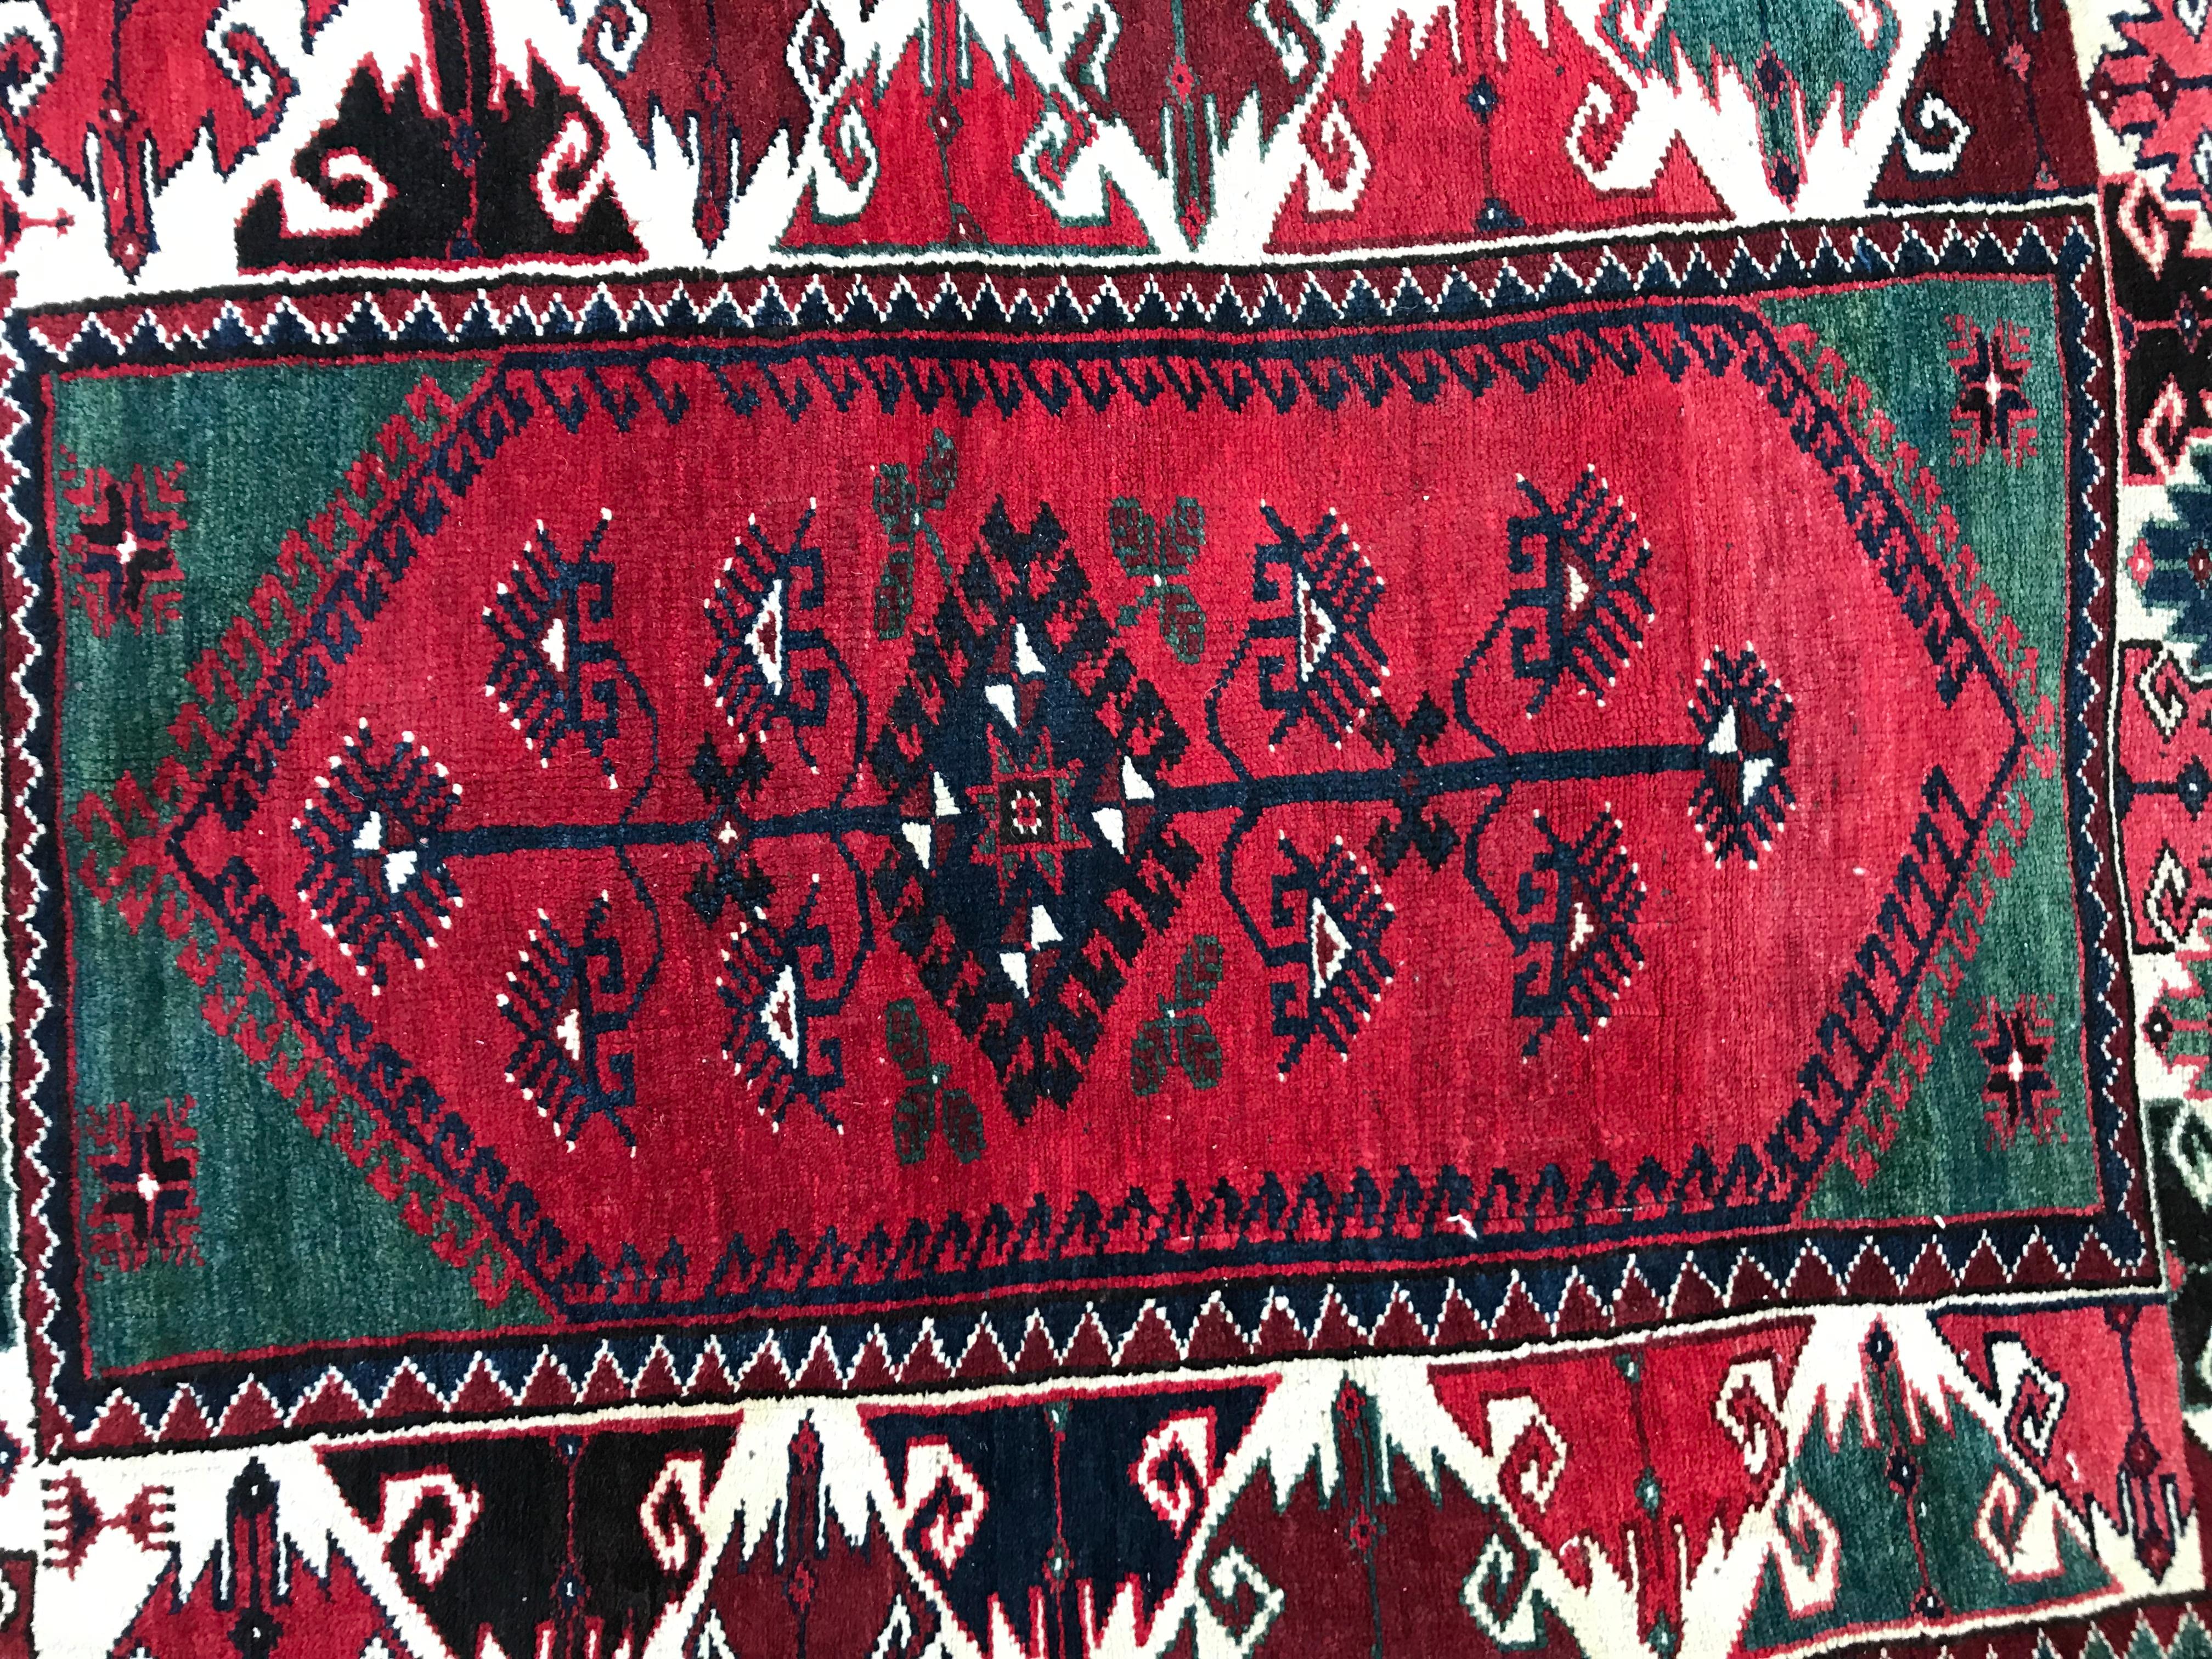 Magnifique tapis turc anatolien du 20e siècle aux couleurs et aux motifs géométriques entièrement noués à la main avec du velours de laine sur une base de laine.

✨✨✨
